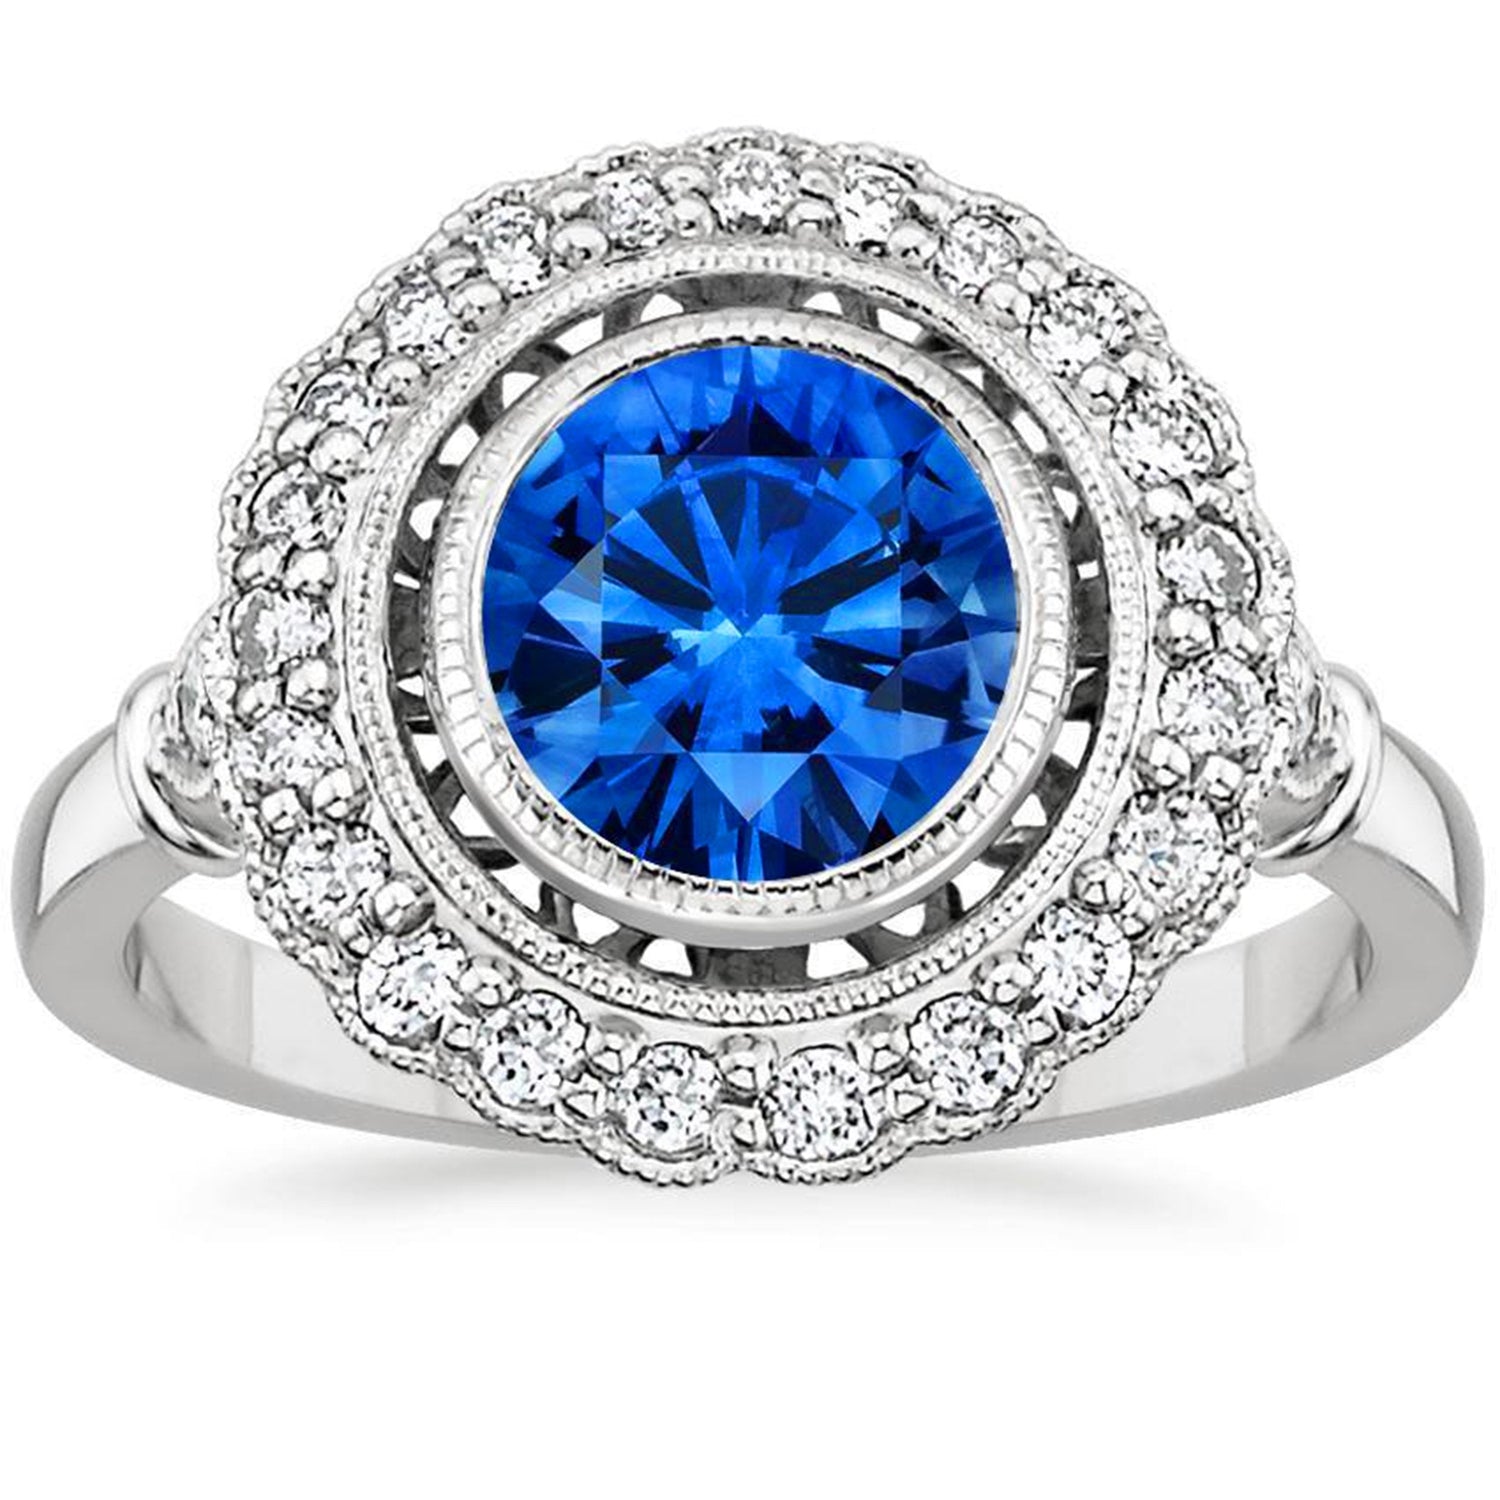 Gioielli Art Nouveau Nuovo anello Halo Zaffiro tondo blu con diamante da 3,20 ct